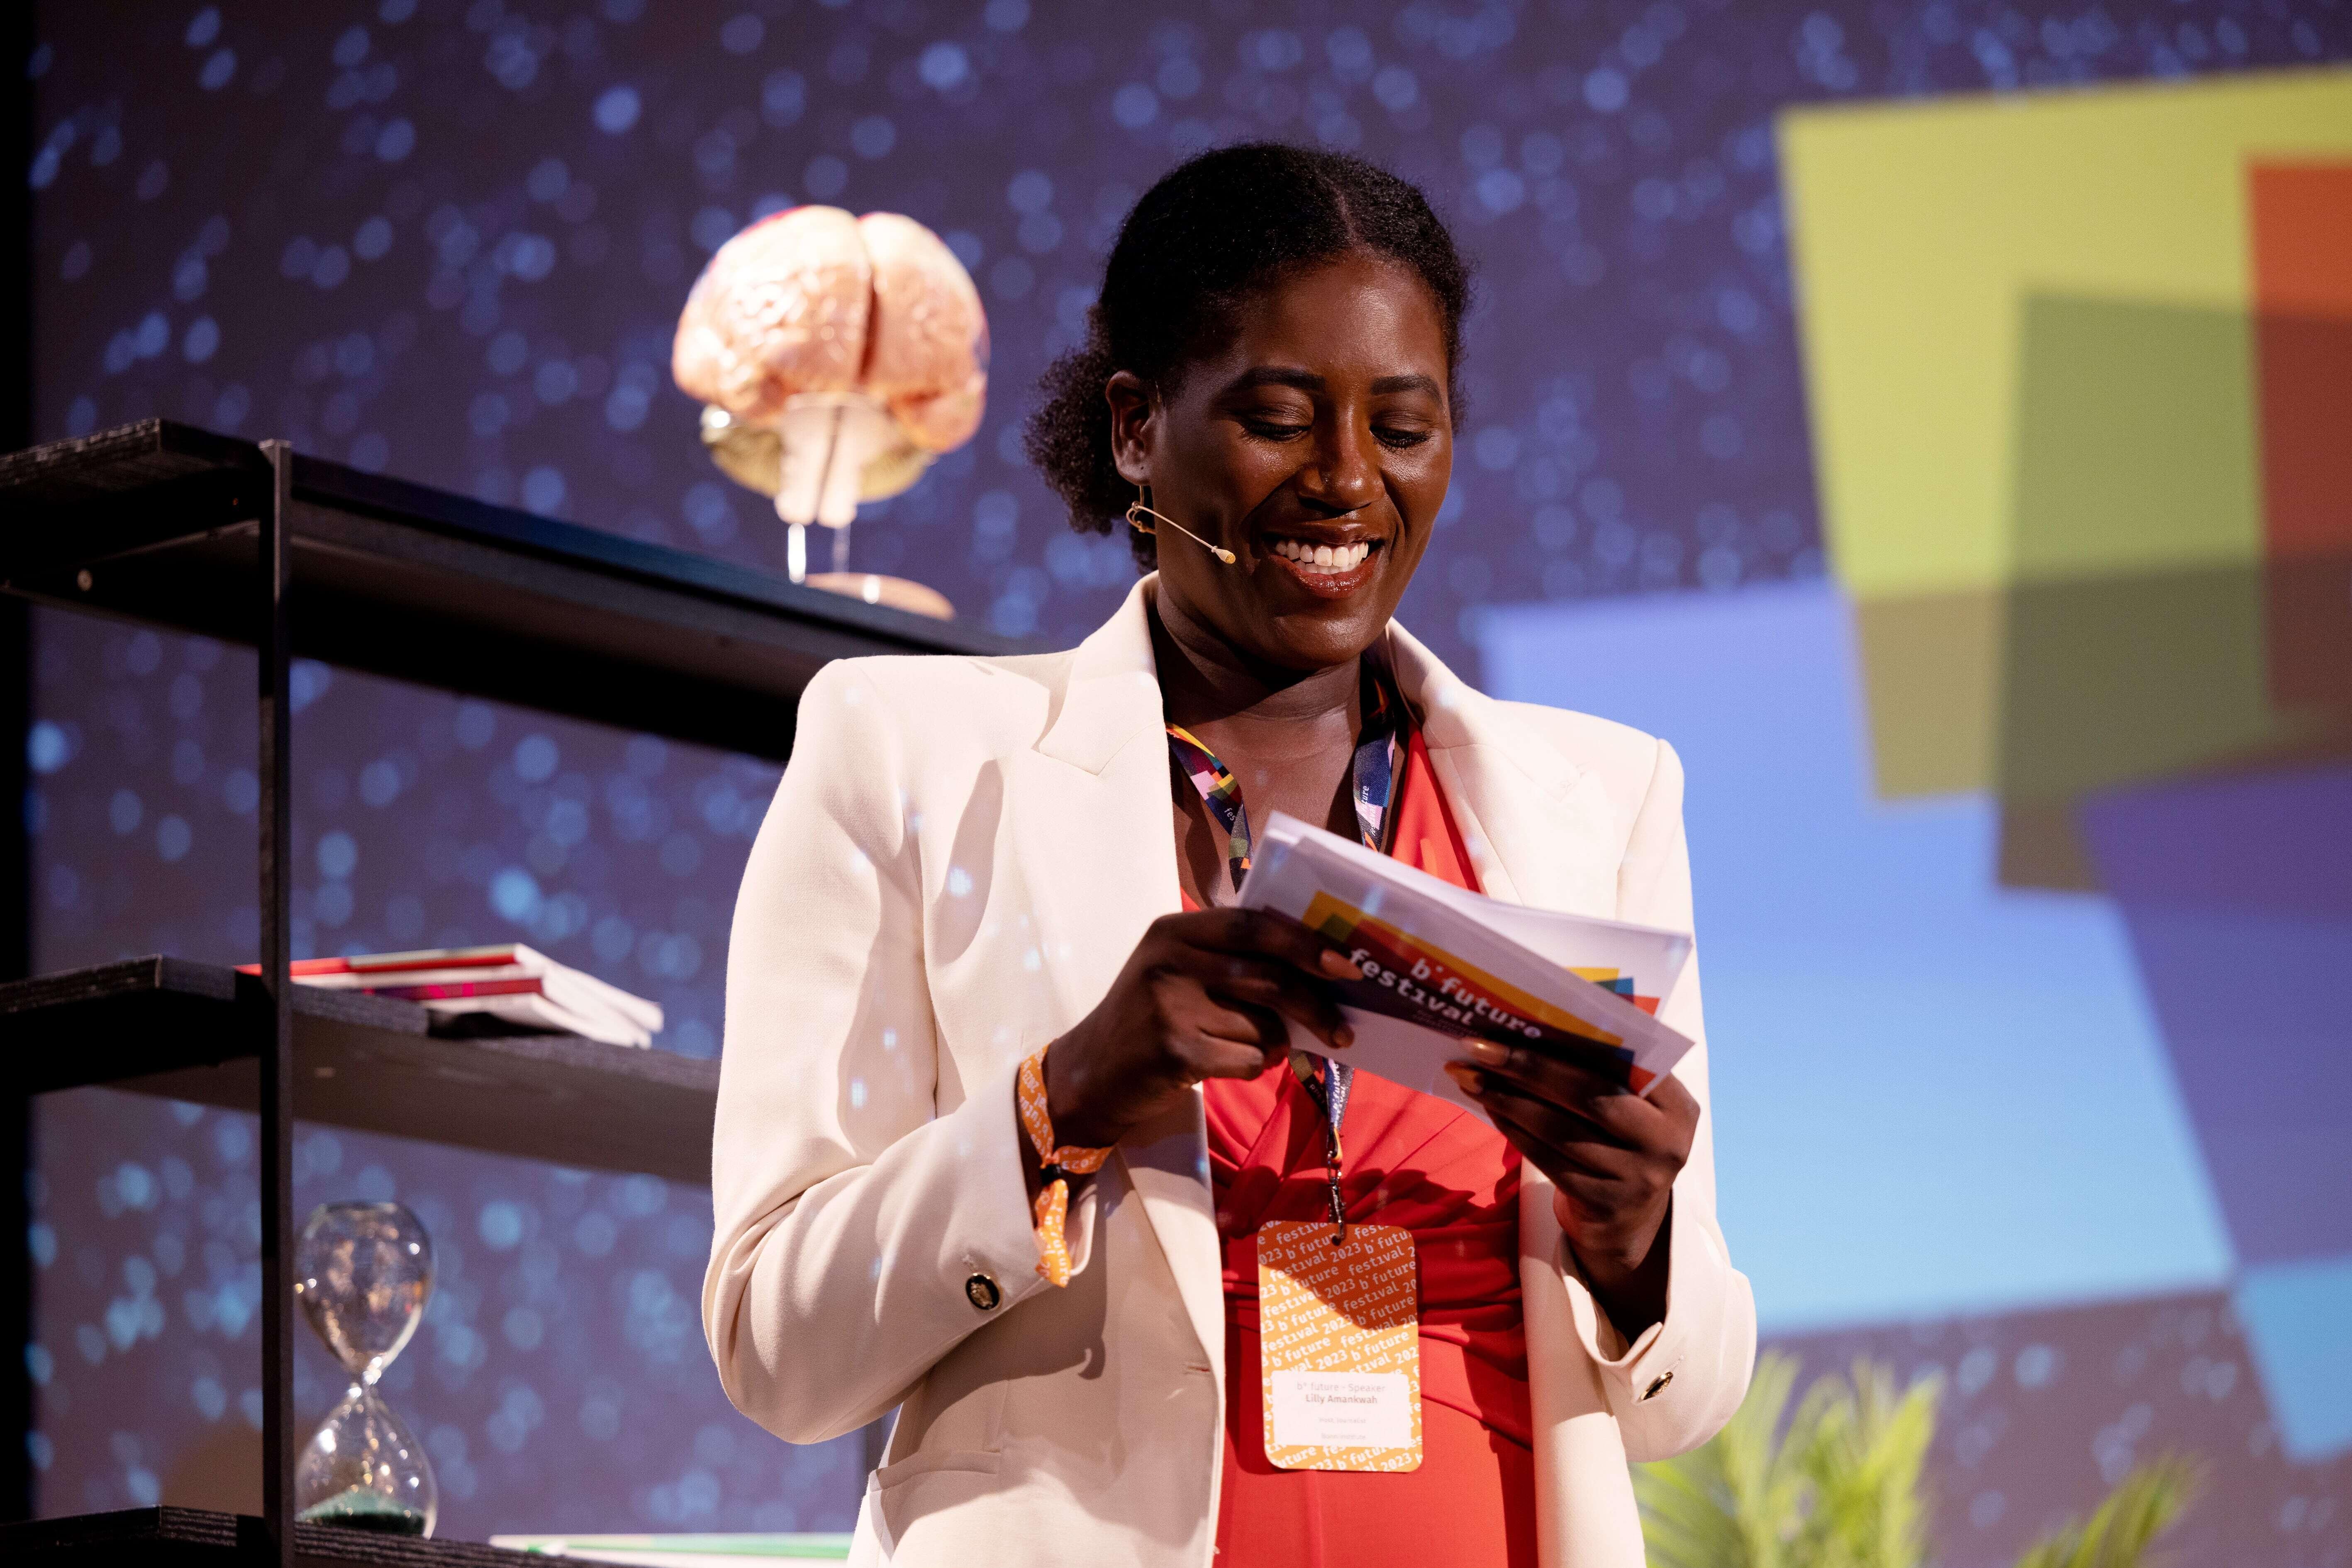 Lilly Amankwah steht auf der Bühne und hält Moderationskarten in der Hand, links von ihr ein Regal mit dem Modell eines Gehirns, im Hintergrund das b° future Logo auf einer Leinwand.